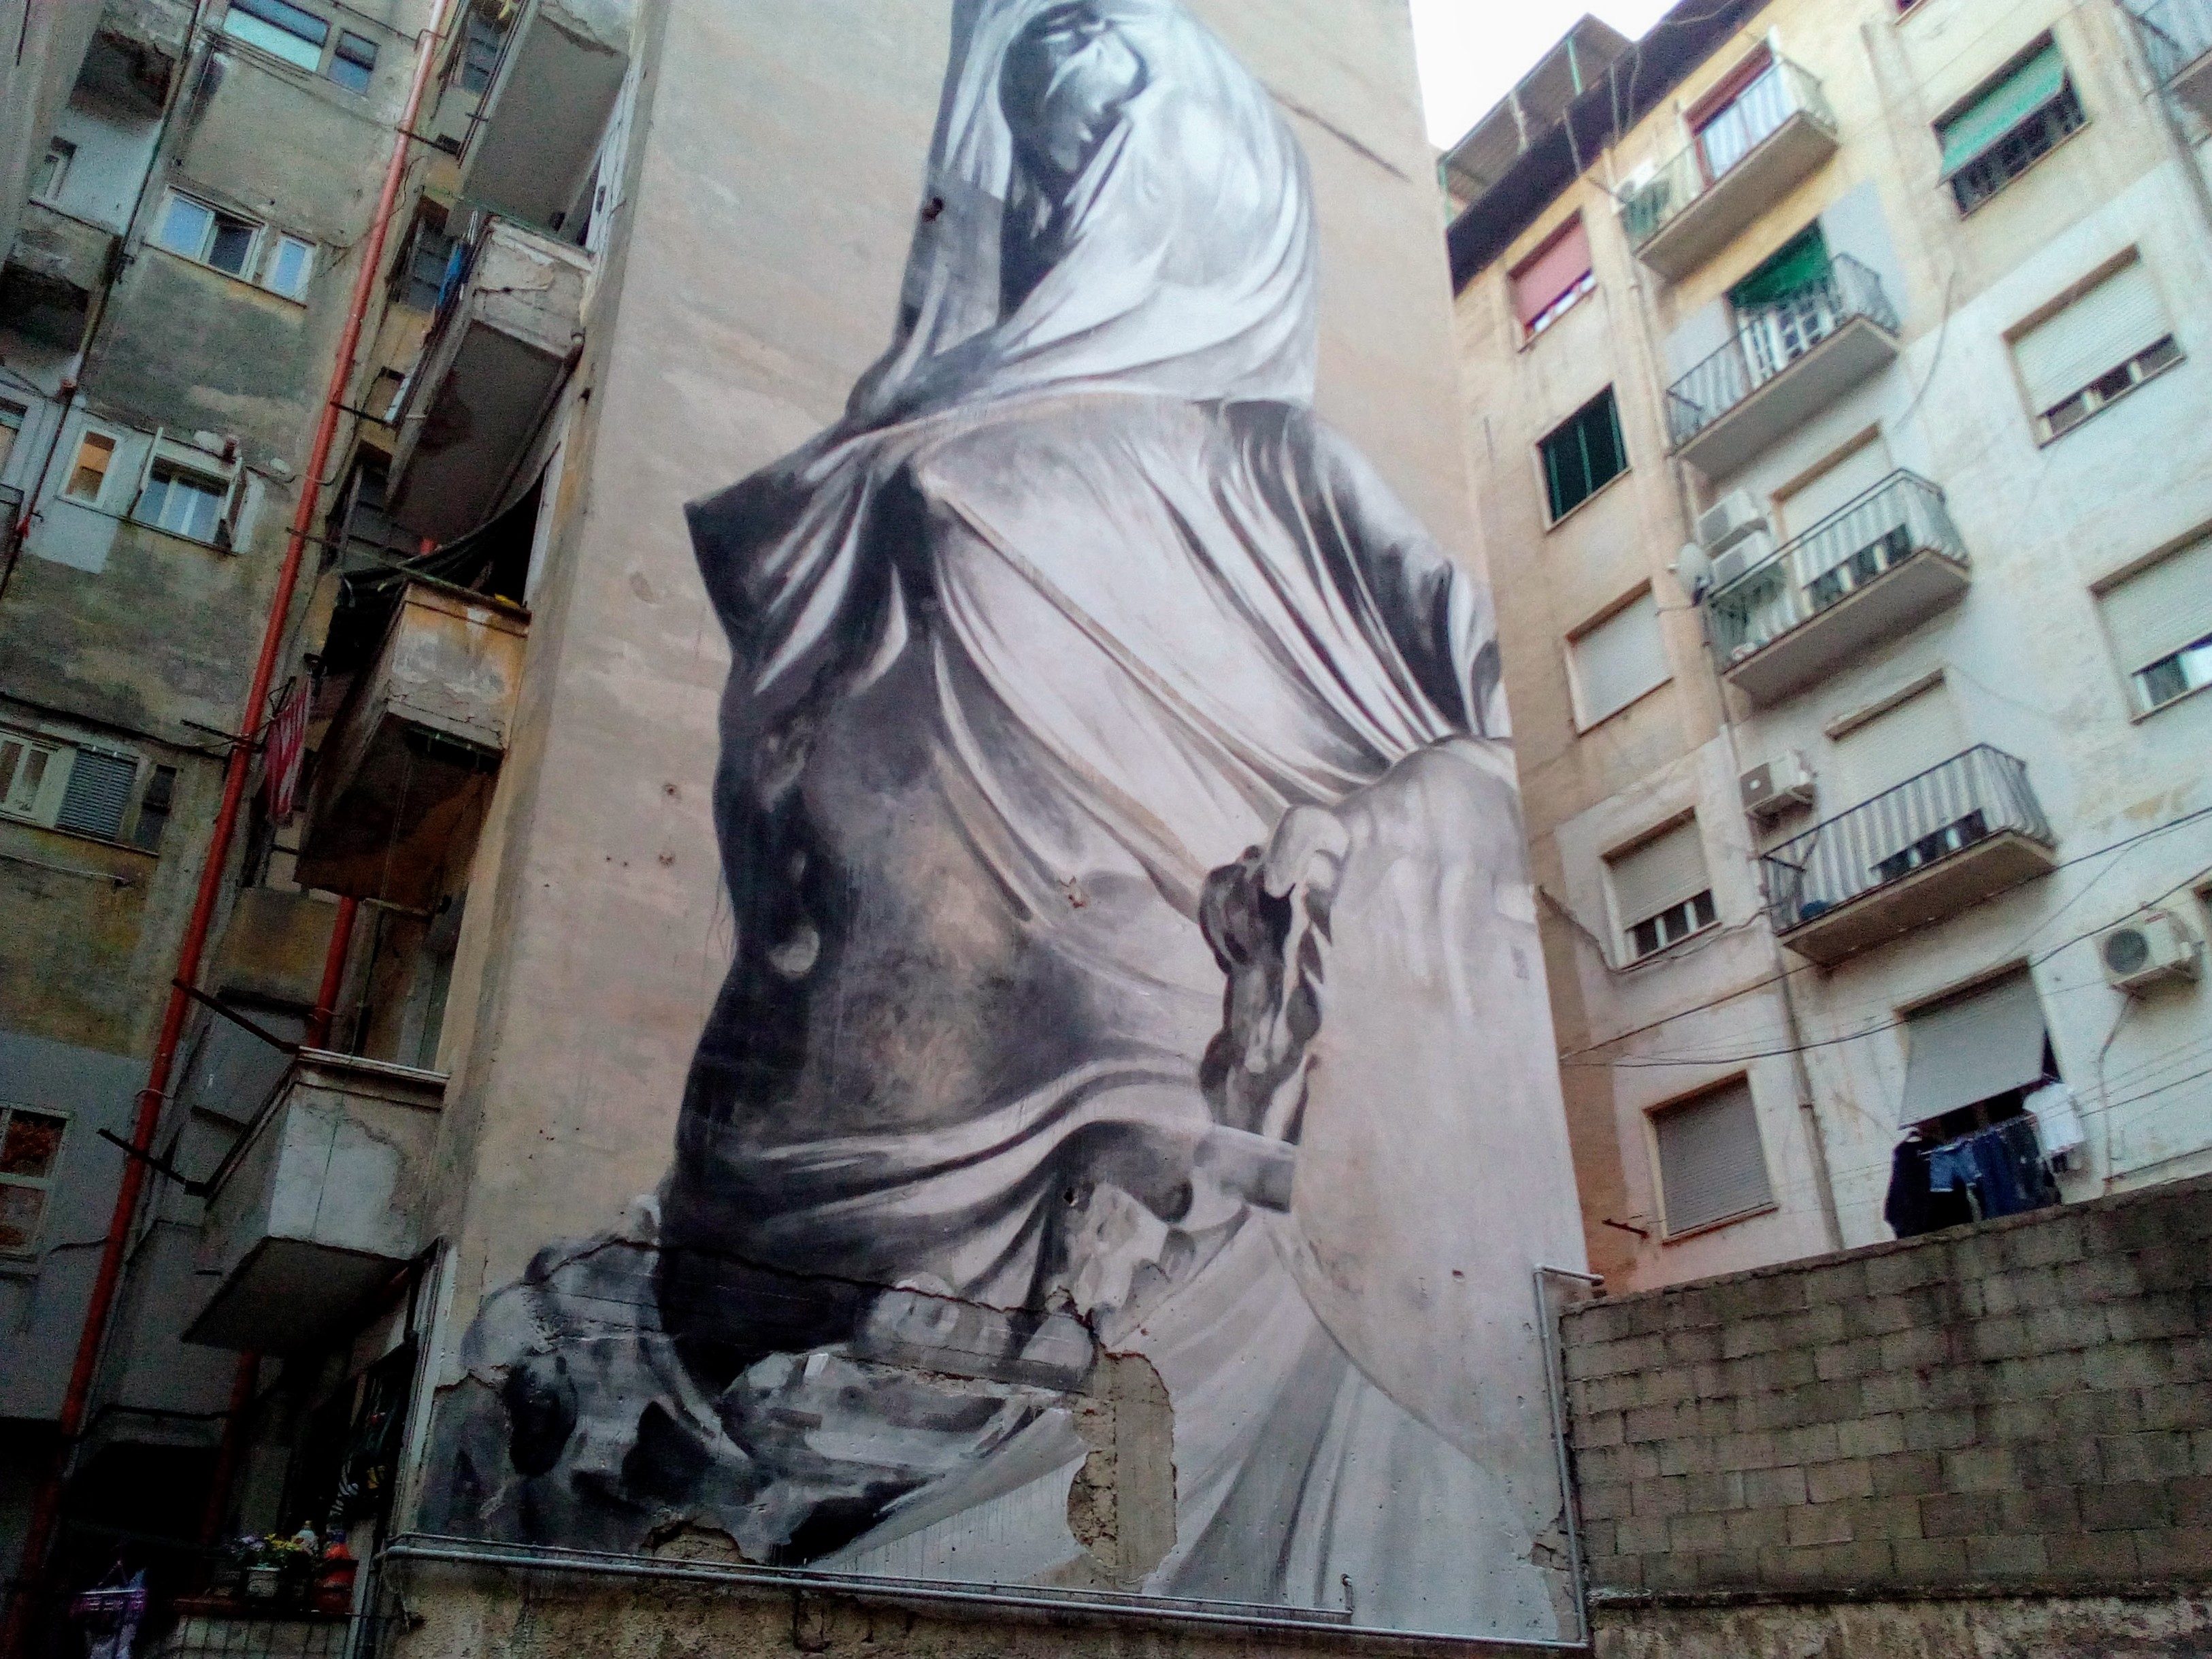 L'Iside, il murales dell'artista argentino Francisco Bosoletti ai quartieri spagnoli di Napoli